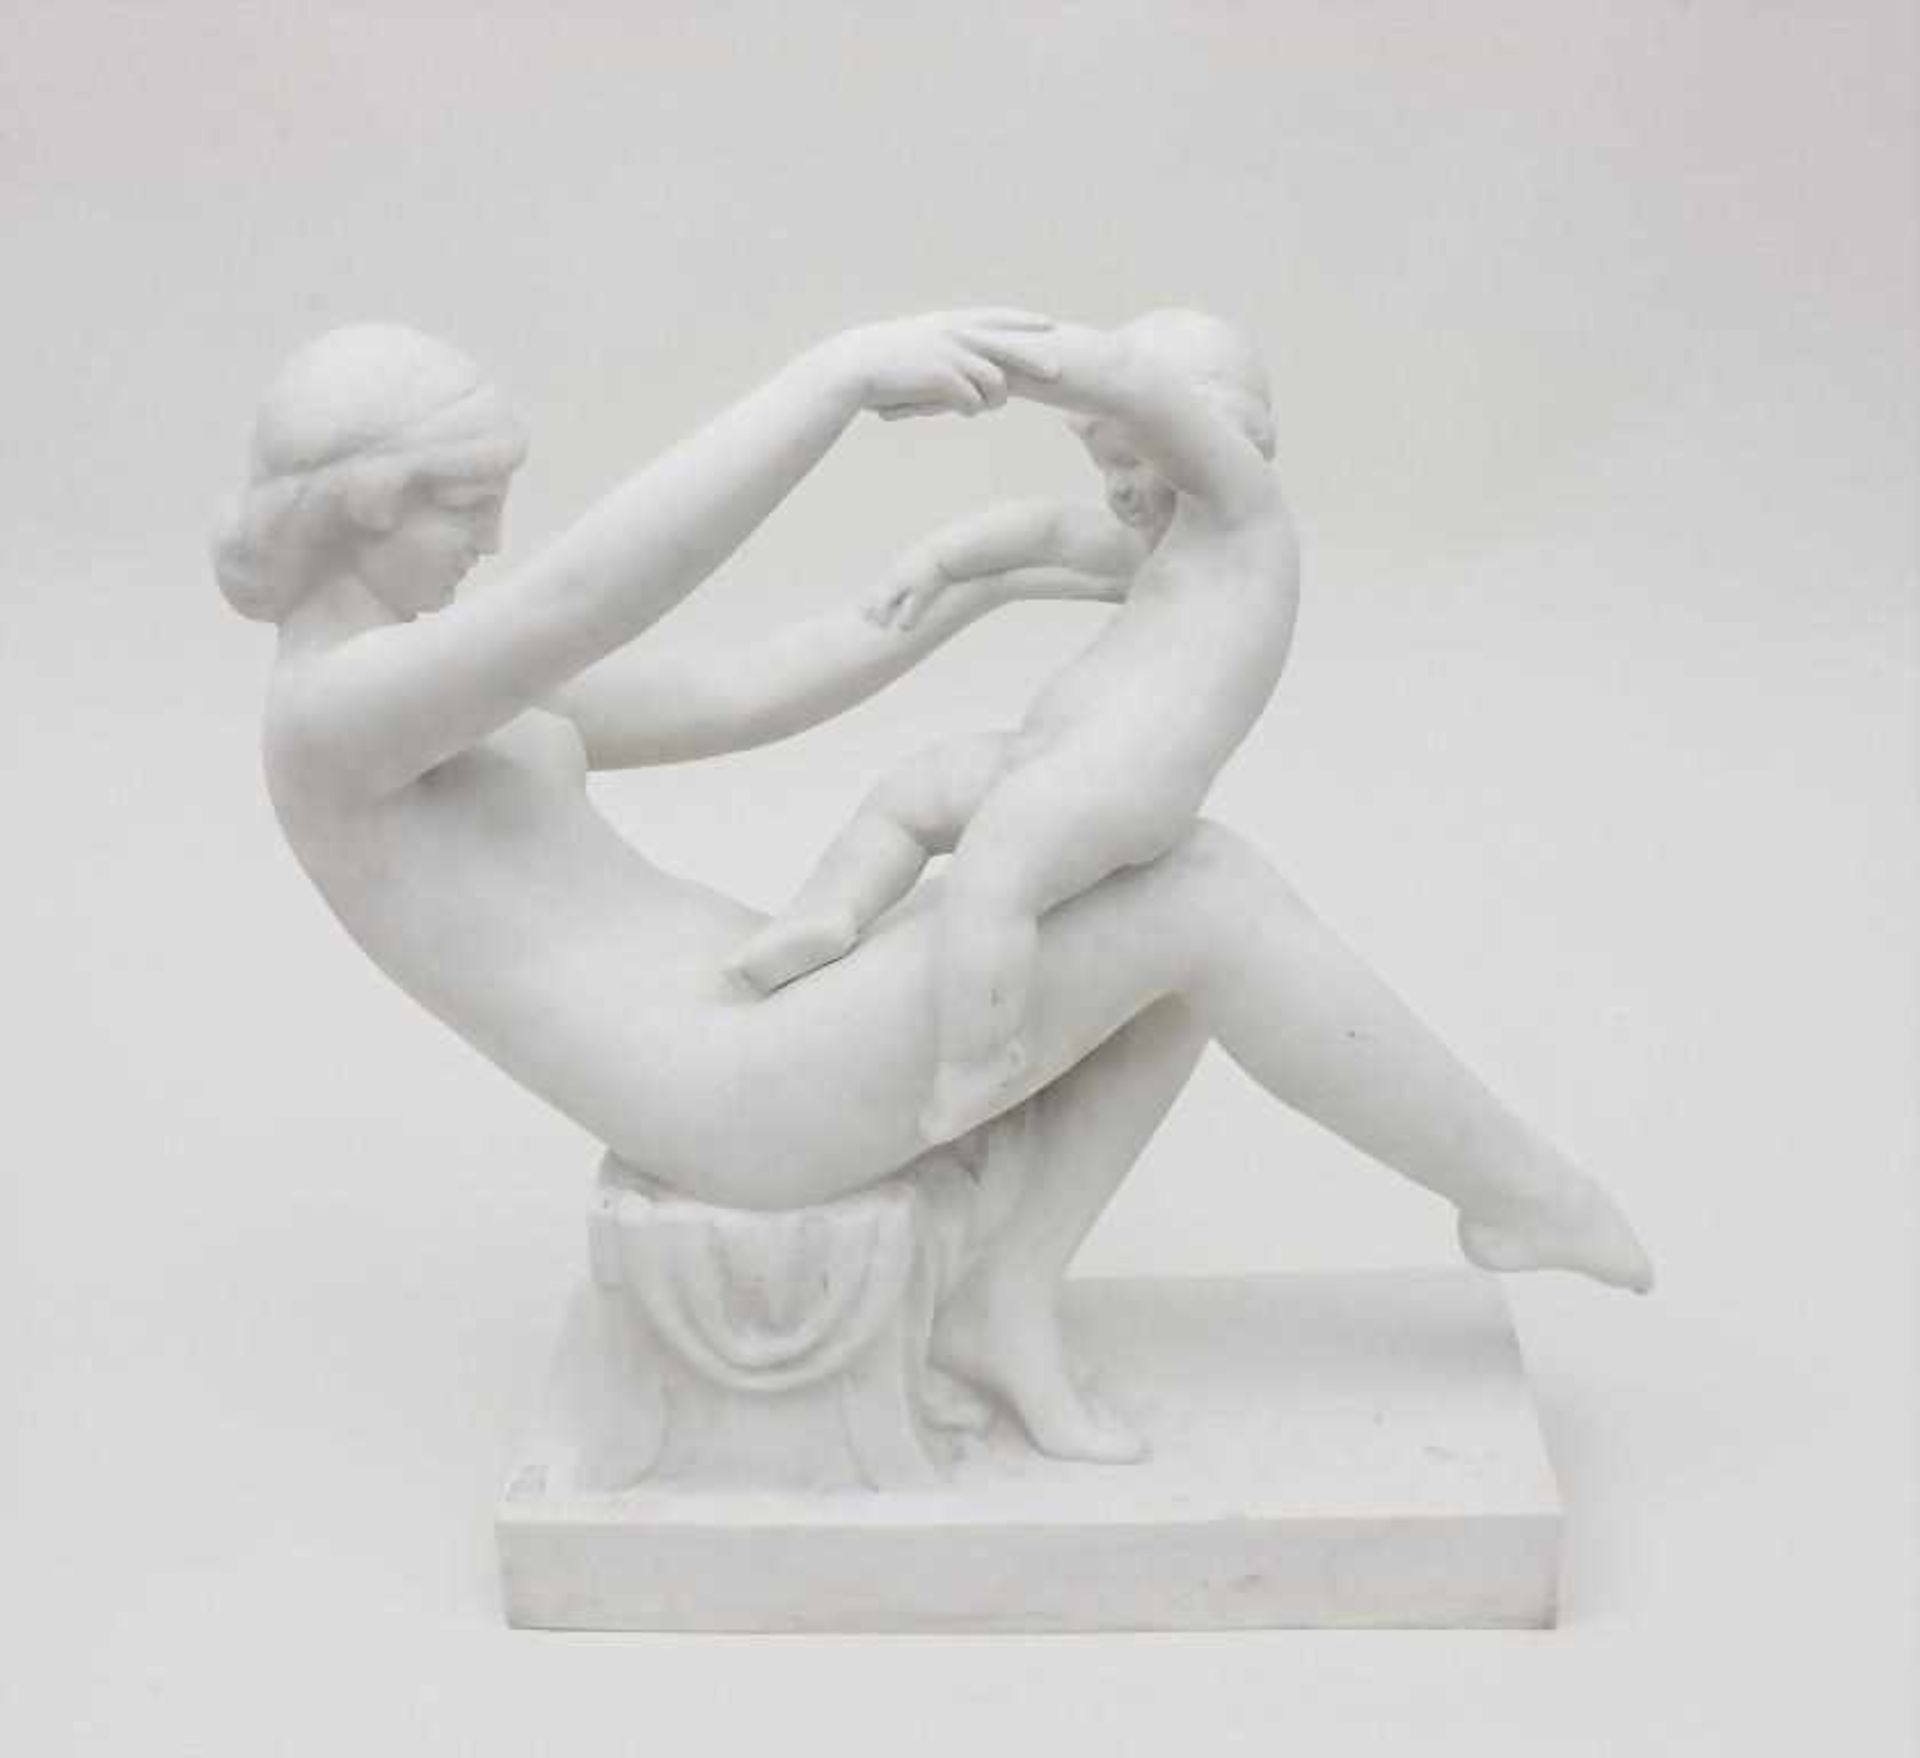 Porzellan Figur ' Mutterliebe' / Porcelain Figurine ' Motherly Love', Gaston Contesse 1870-1846, - Bild 2 aus 6